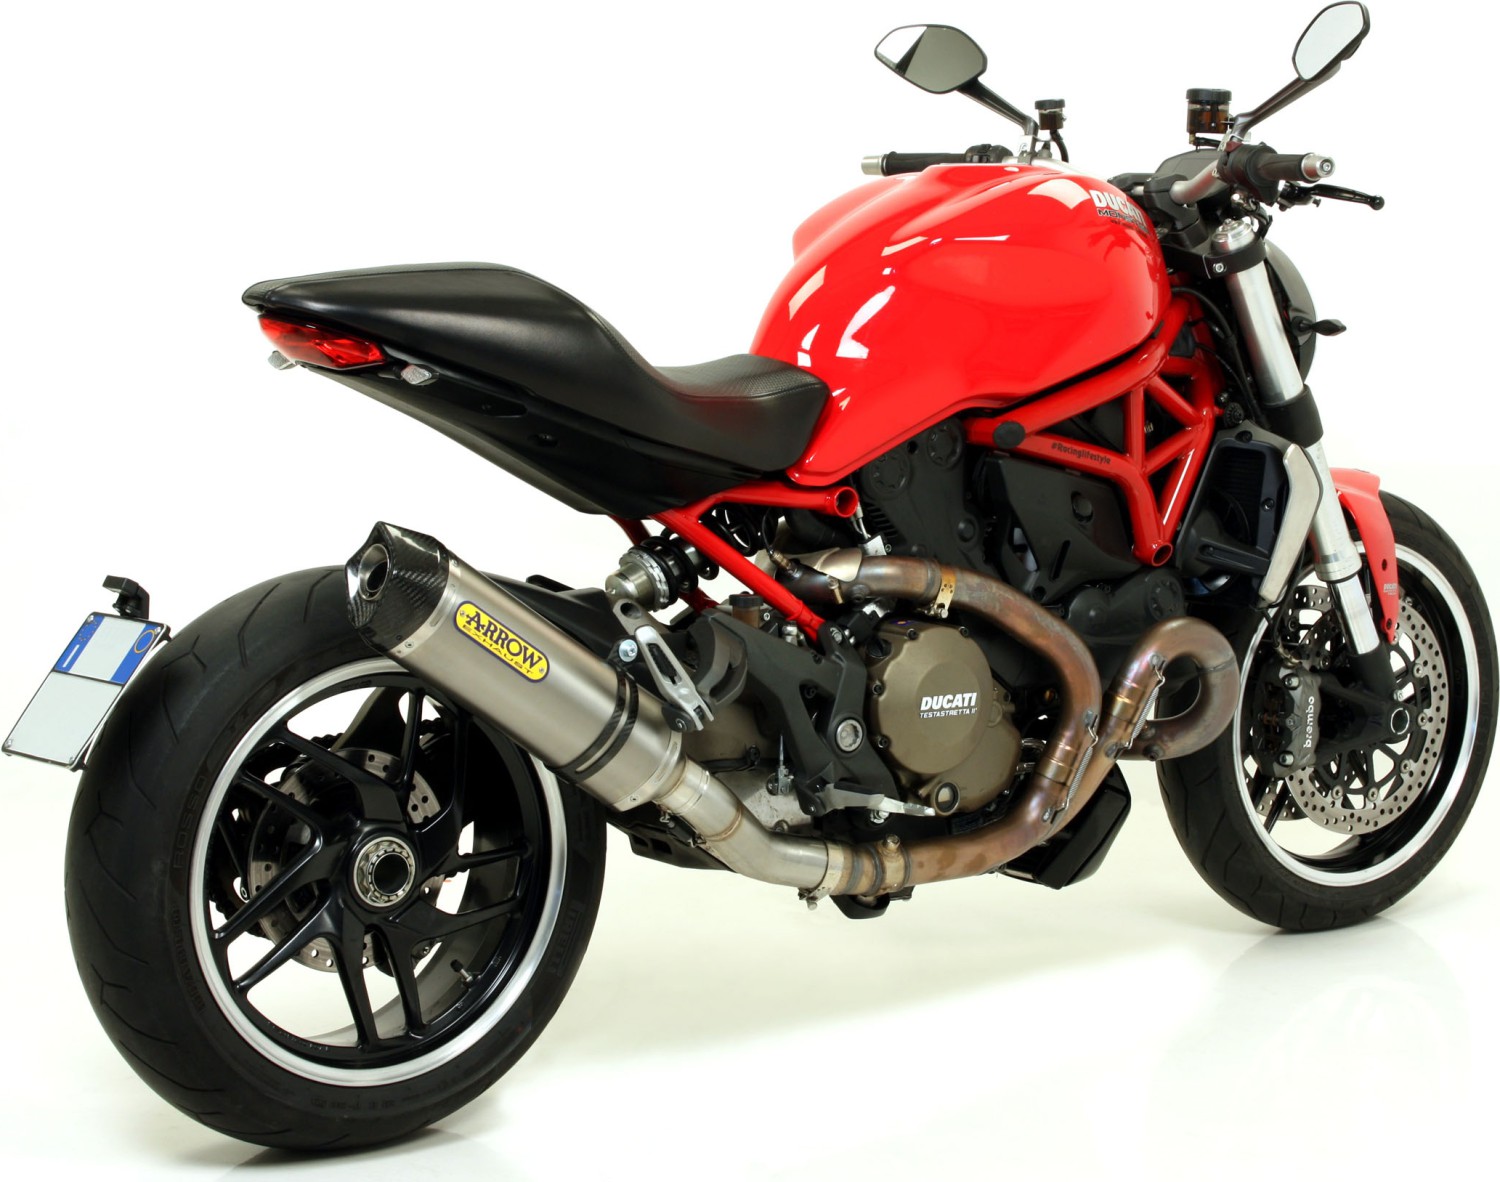  Ducati Monster 1200, Bj. 2014-2015 